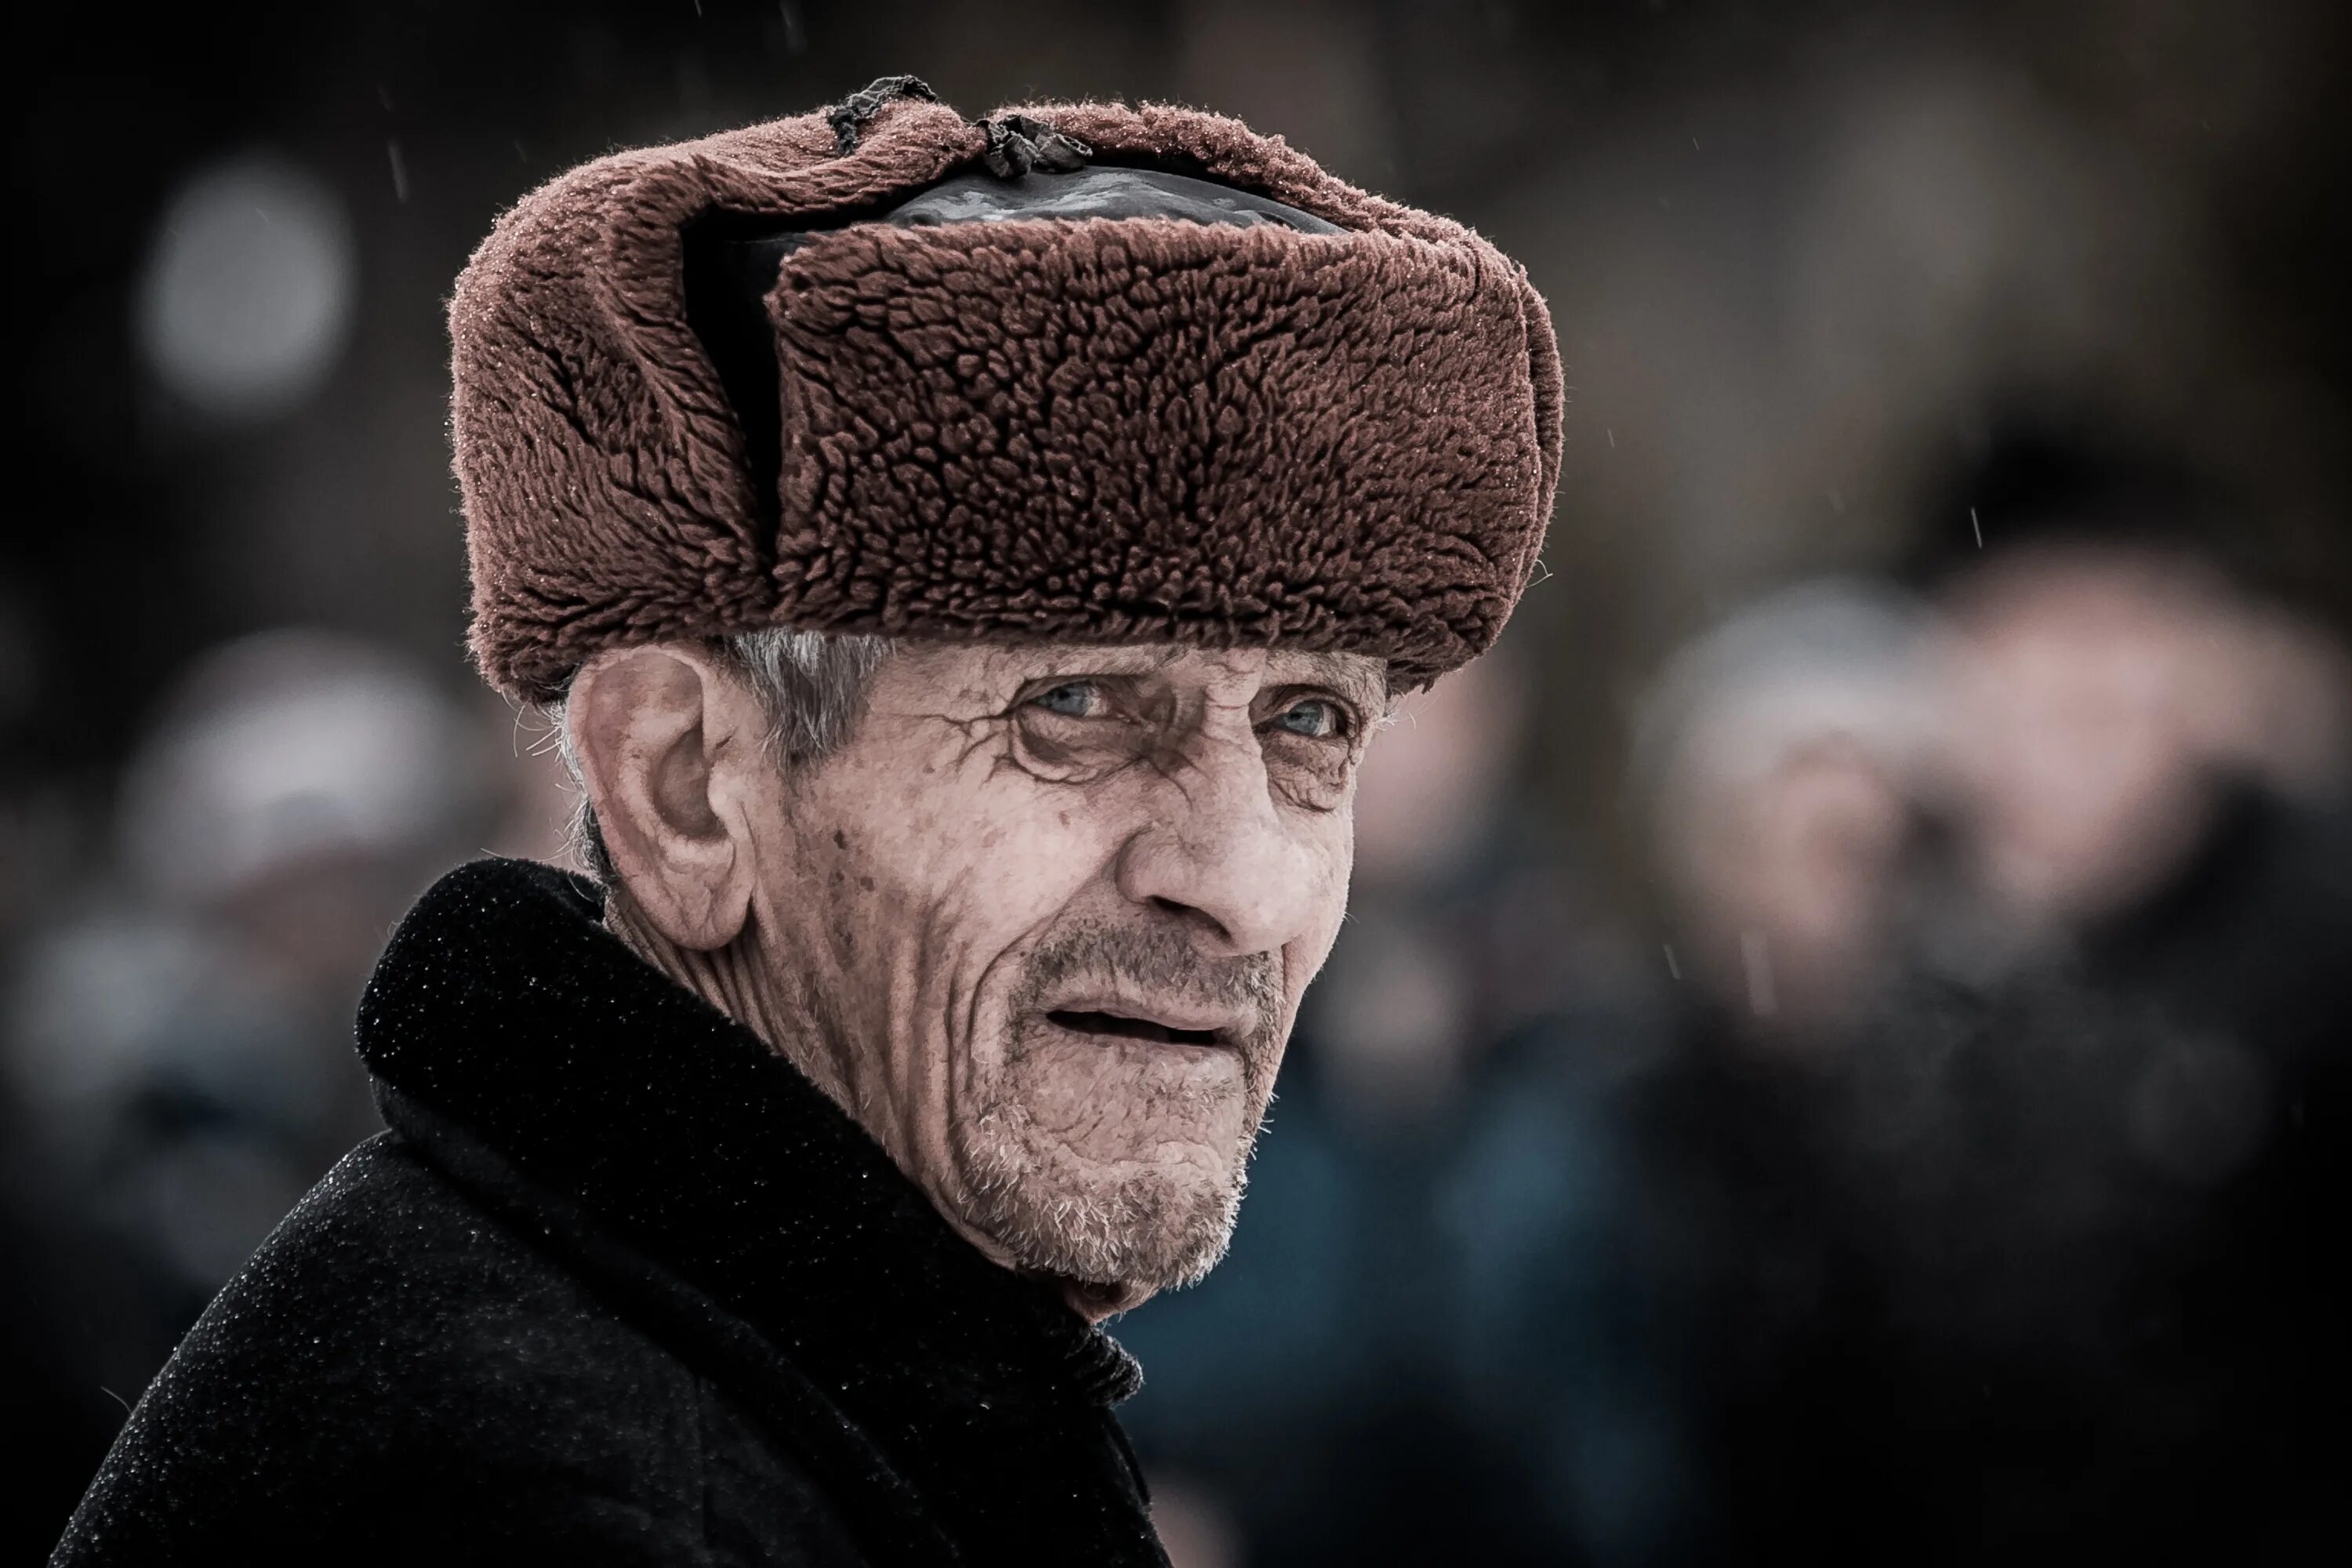 Мужчин старше 80 лет. Старик в ушанке. Пожилой мужчина. Старик в шапке. Фото пожилого мужчины.